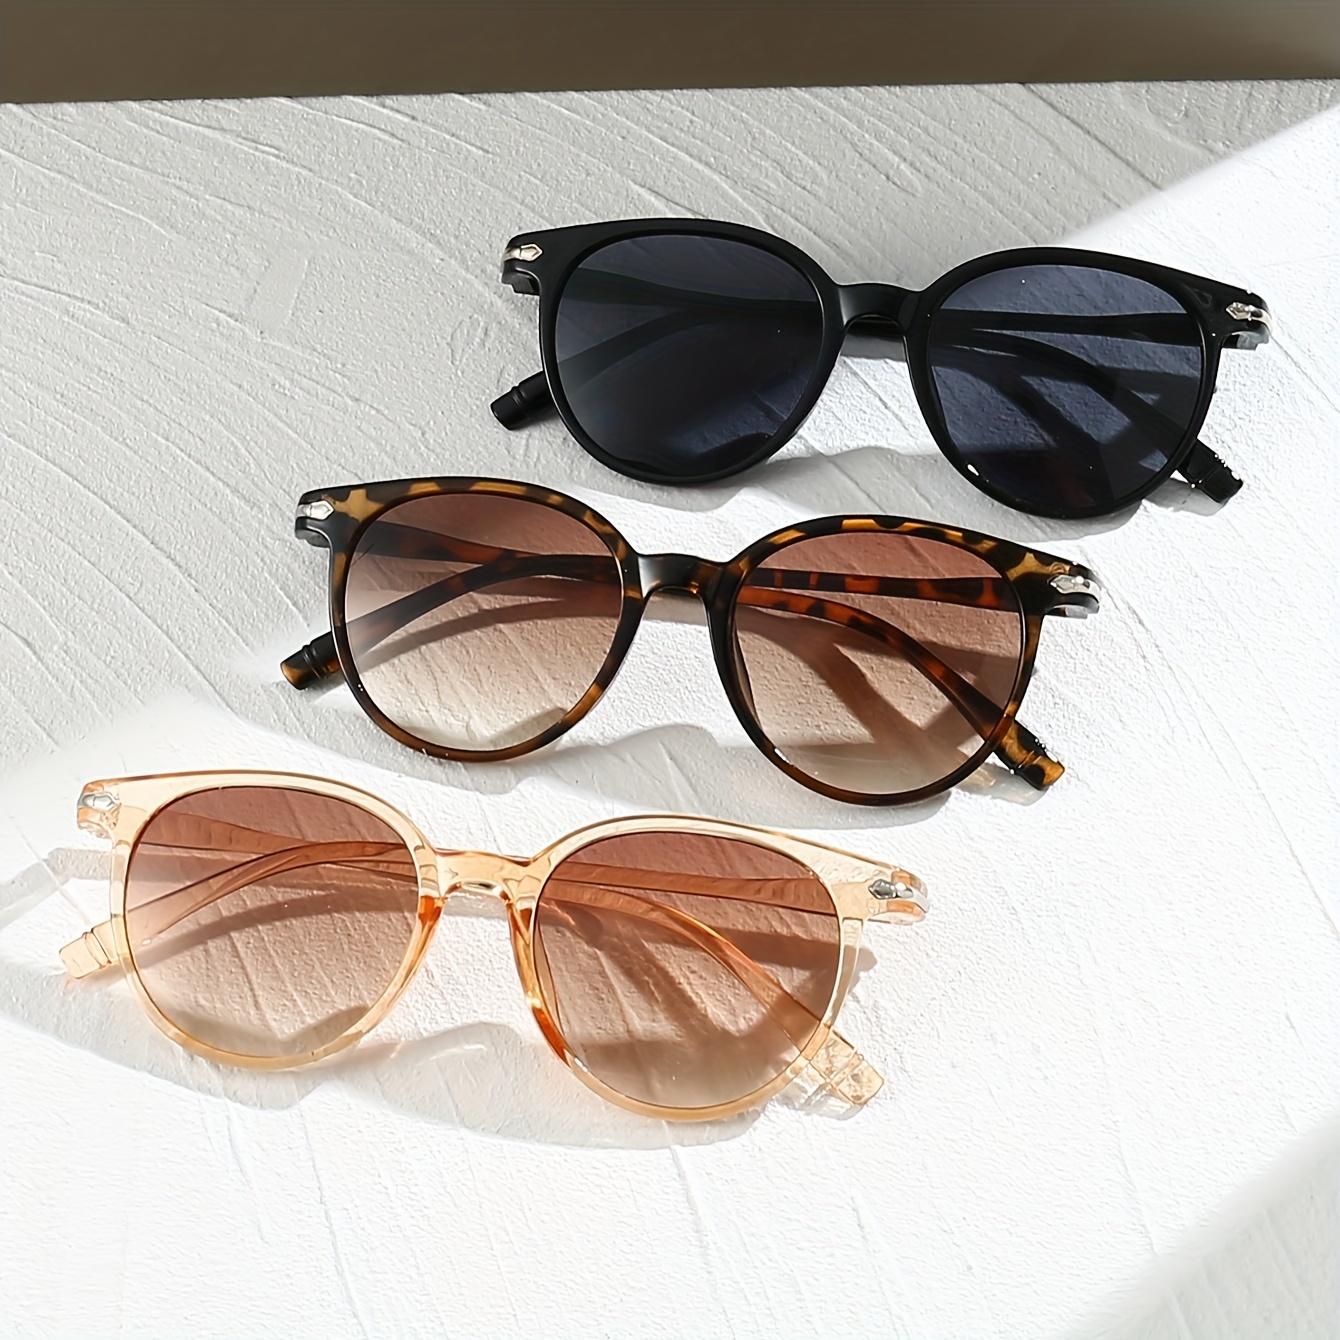 

3 paires de lunettes de soleil rondes tendance pour femmes, couleurs assorties, anti-tempête, collection de lunettes circulaires à la mode.